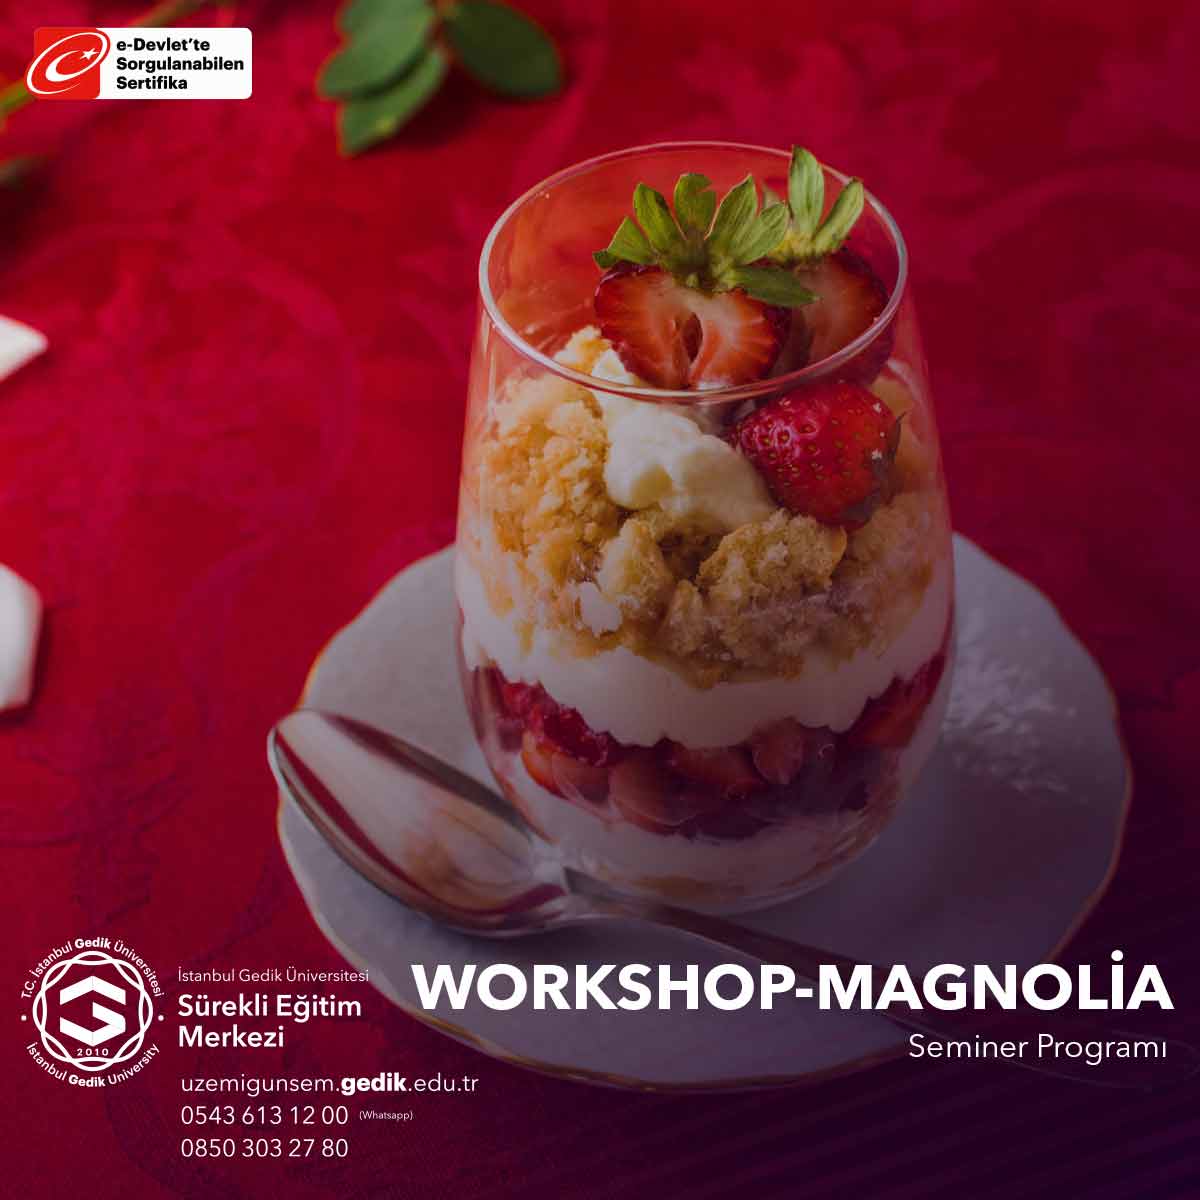 Bu seminer, katılımcılara magnolia tatlısı yapımının her aşamasını öğretir, hamurun hazırlanması, şekil verme, pişirme ve sunum gibi adımları içerir.